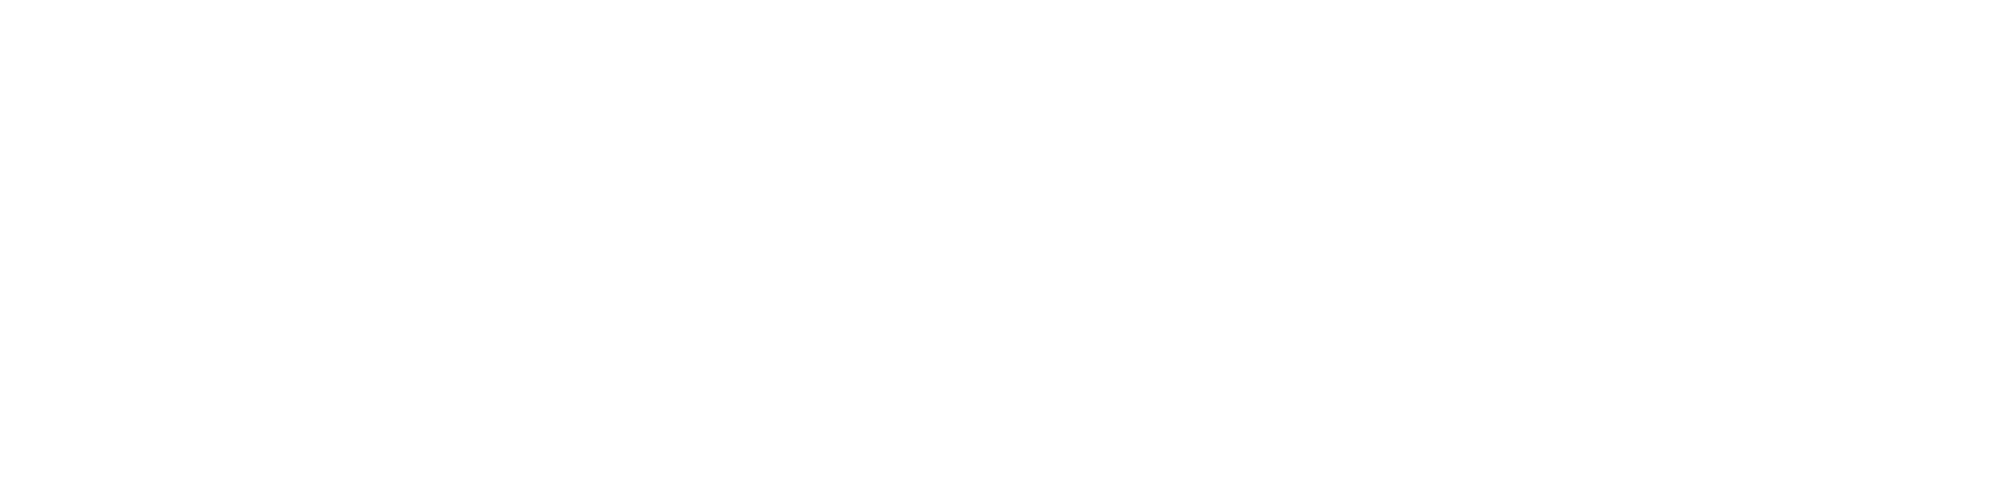 Visitez la Cap-Martin Atelier bord de mer Curensology 2020 Spring/Summer Collection